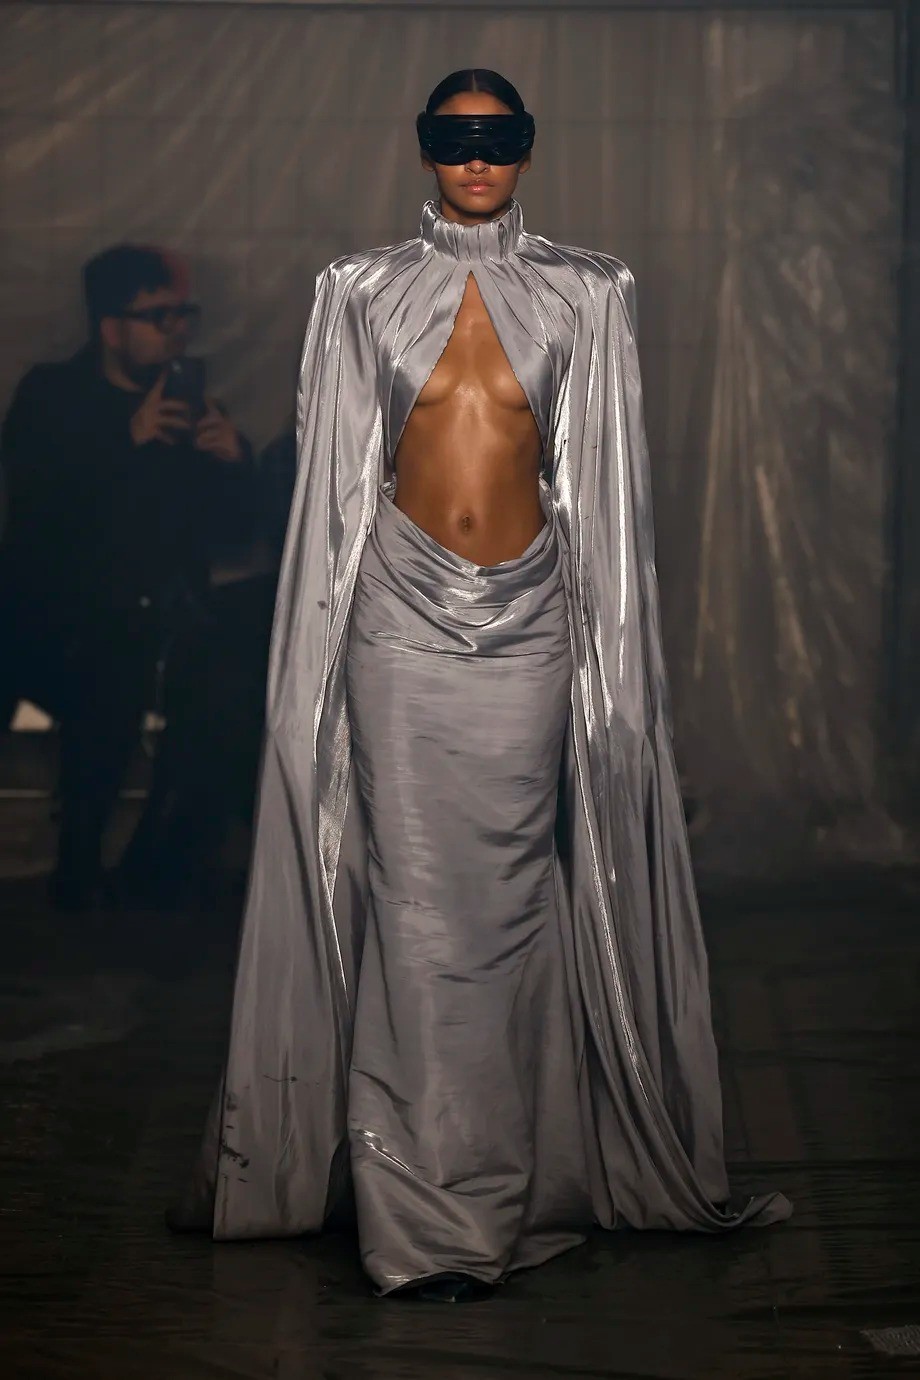 《暗黑破壞神4》主題服裝亮相米蘭時裝周 這服裝很地獄